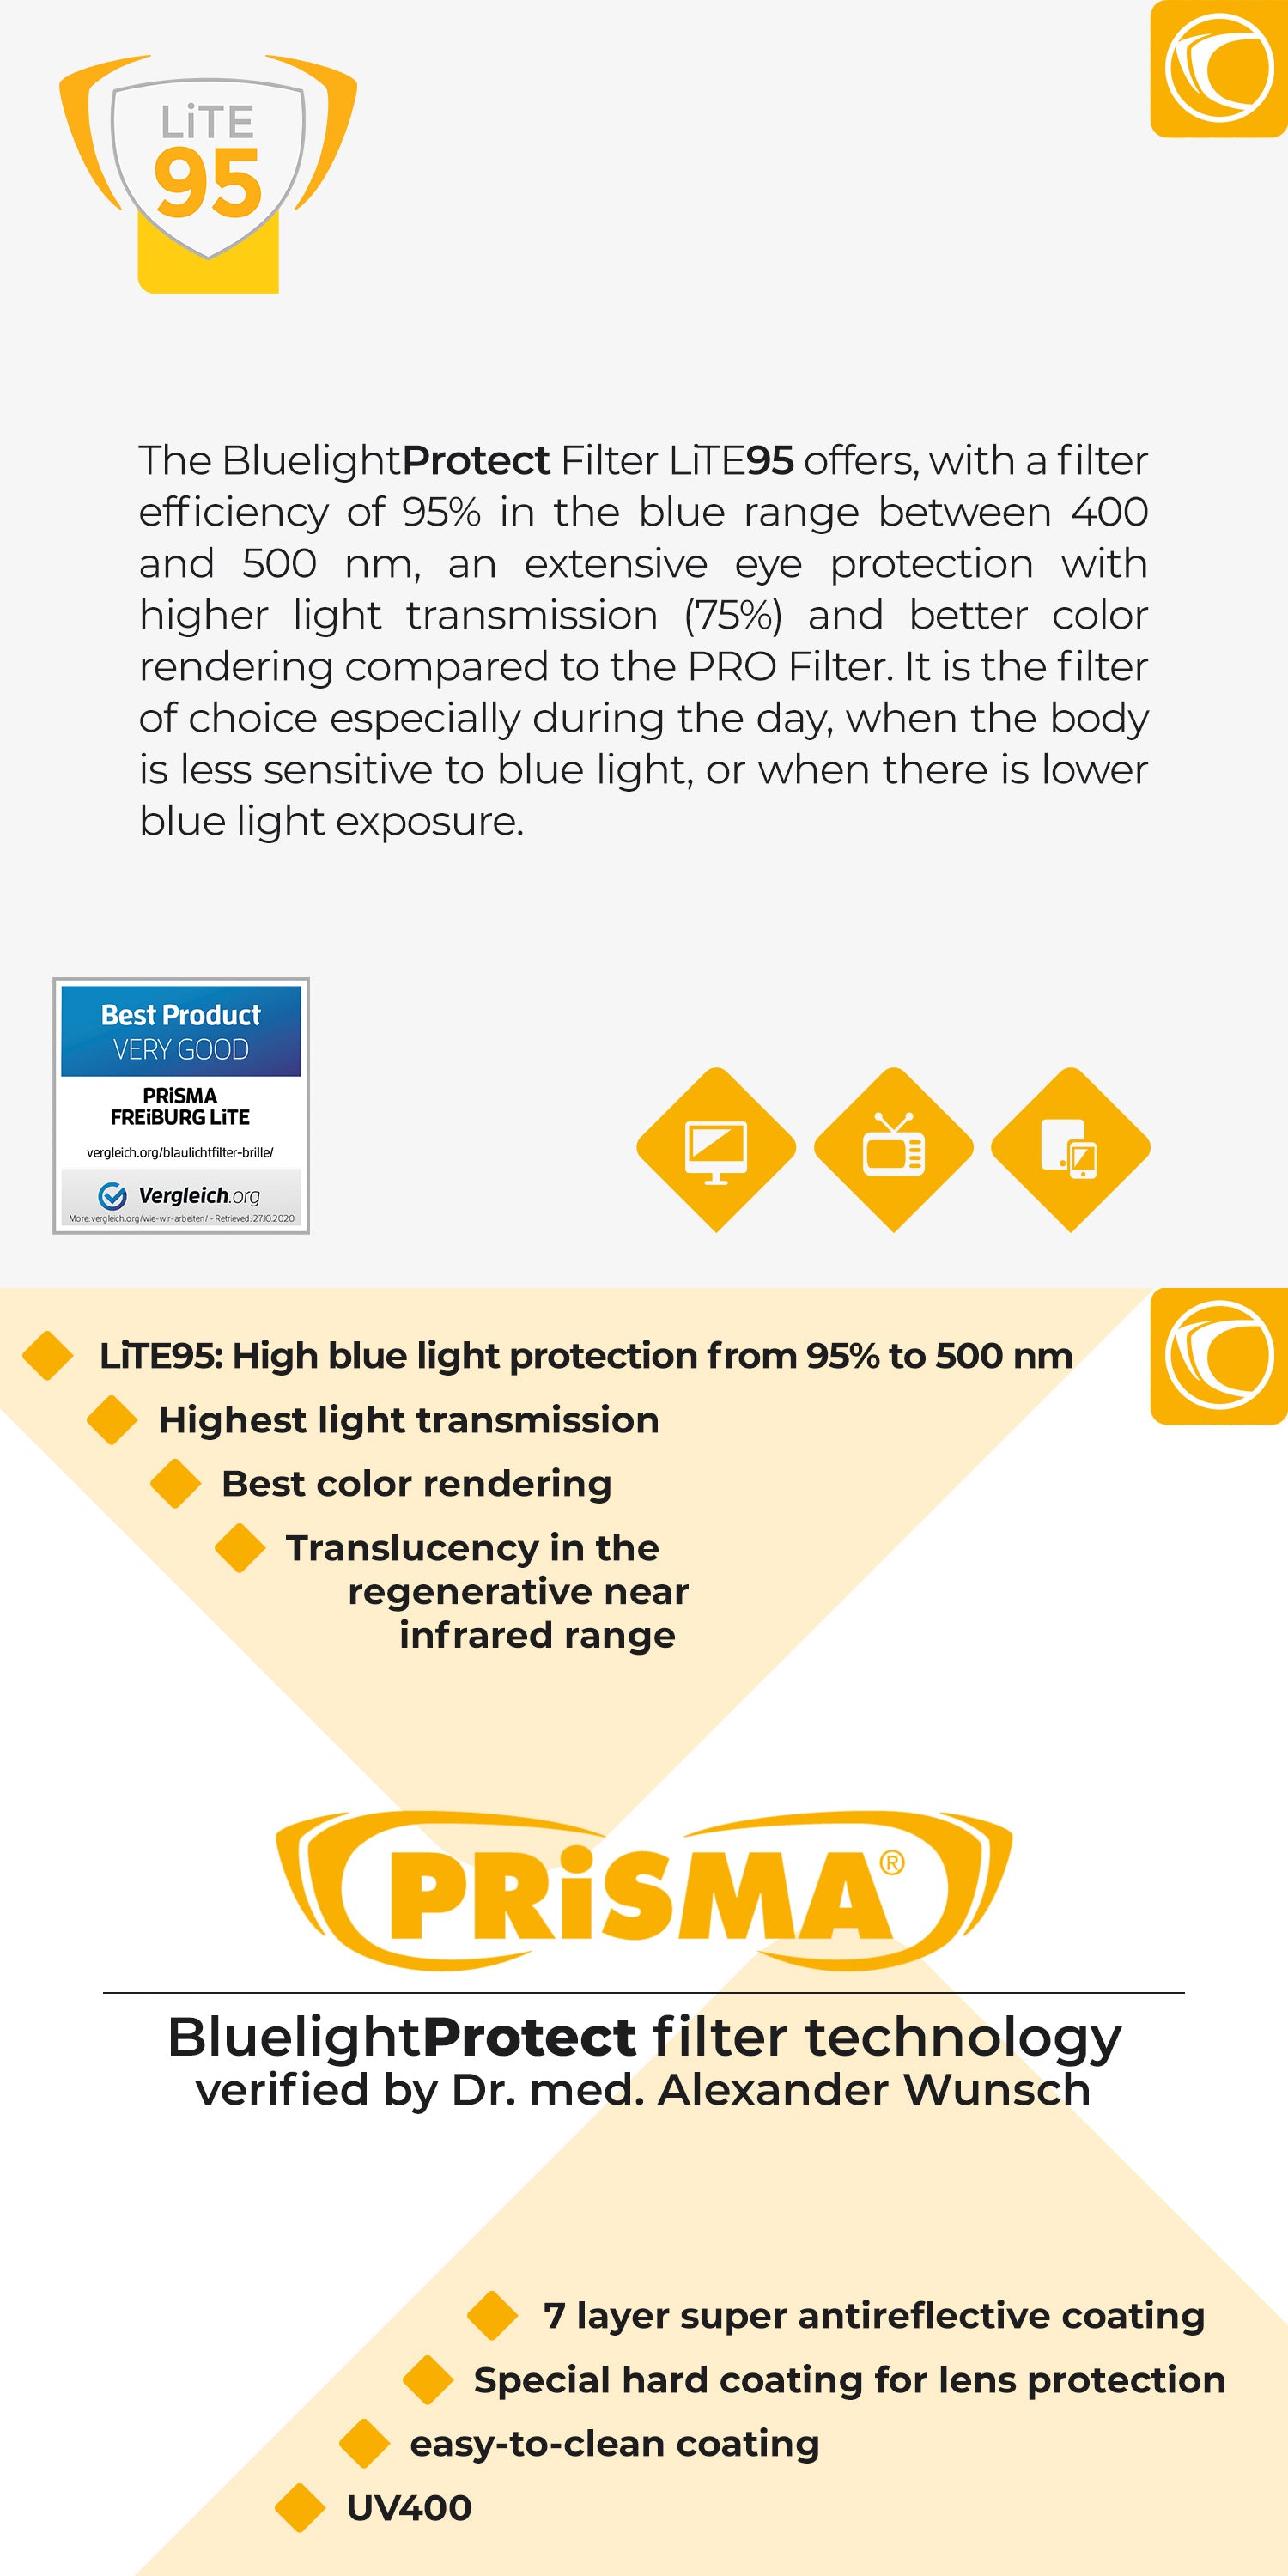 PRiSMA Blue Blocking Glasses - FREiBURG LiTE